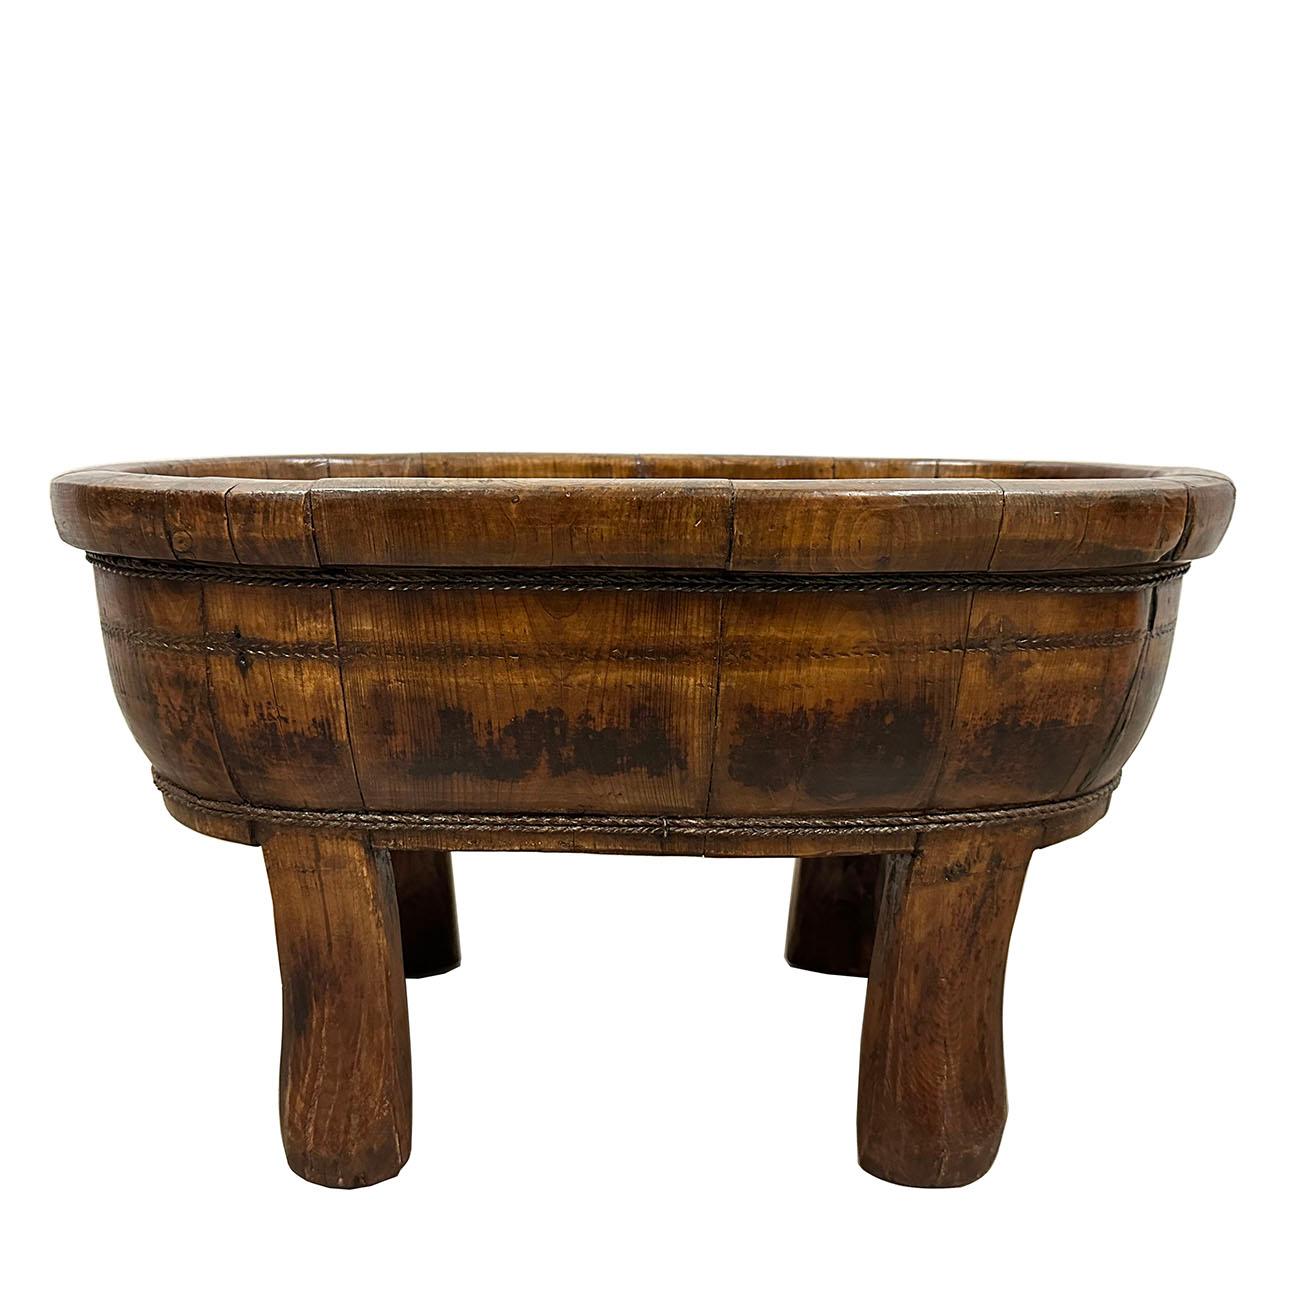 wooden wash tub